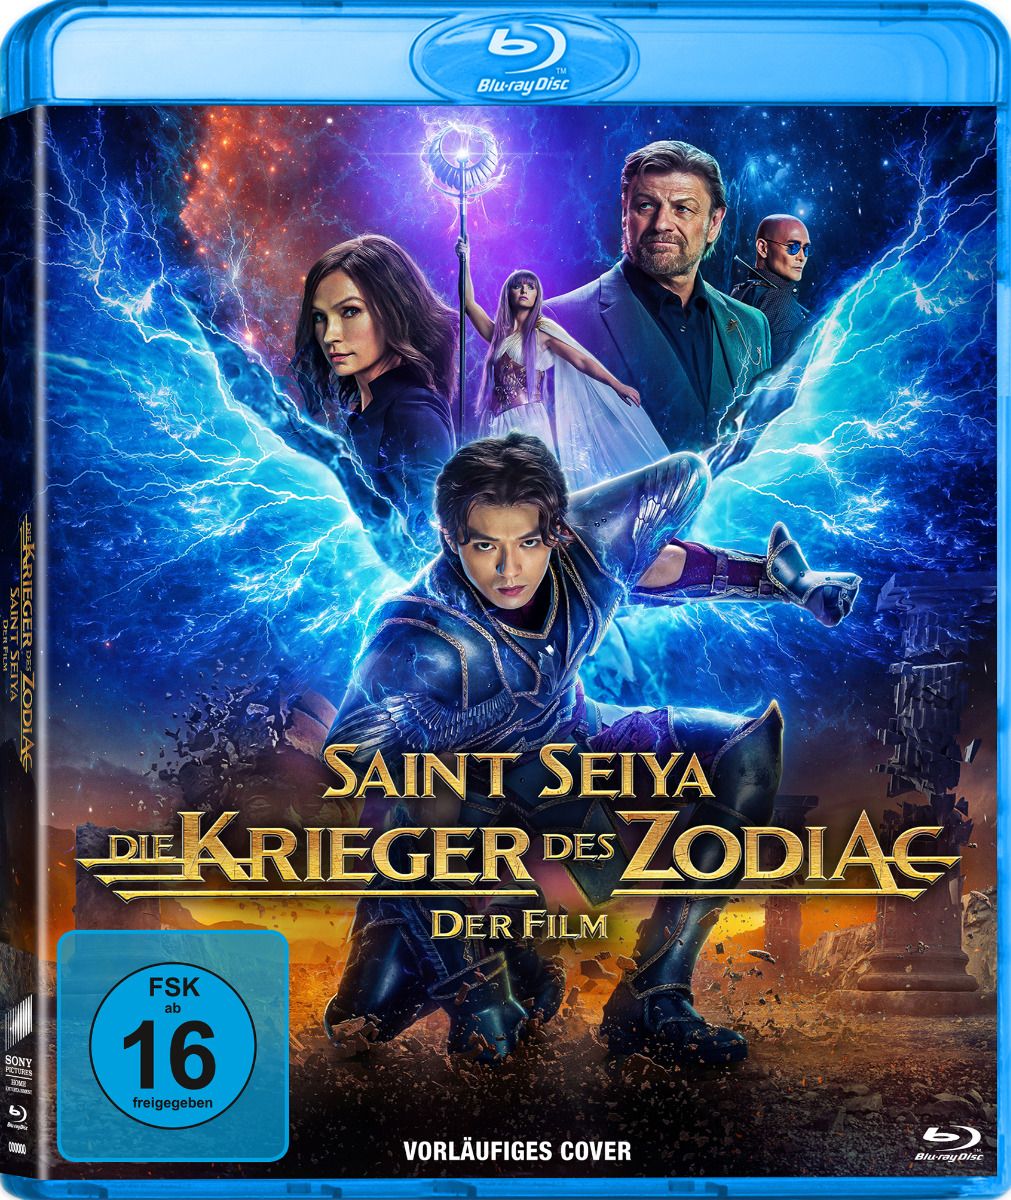 Saint Seiya: Die Krieger des Zodiac (Blu-Ray) - Der Film